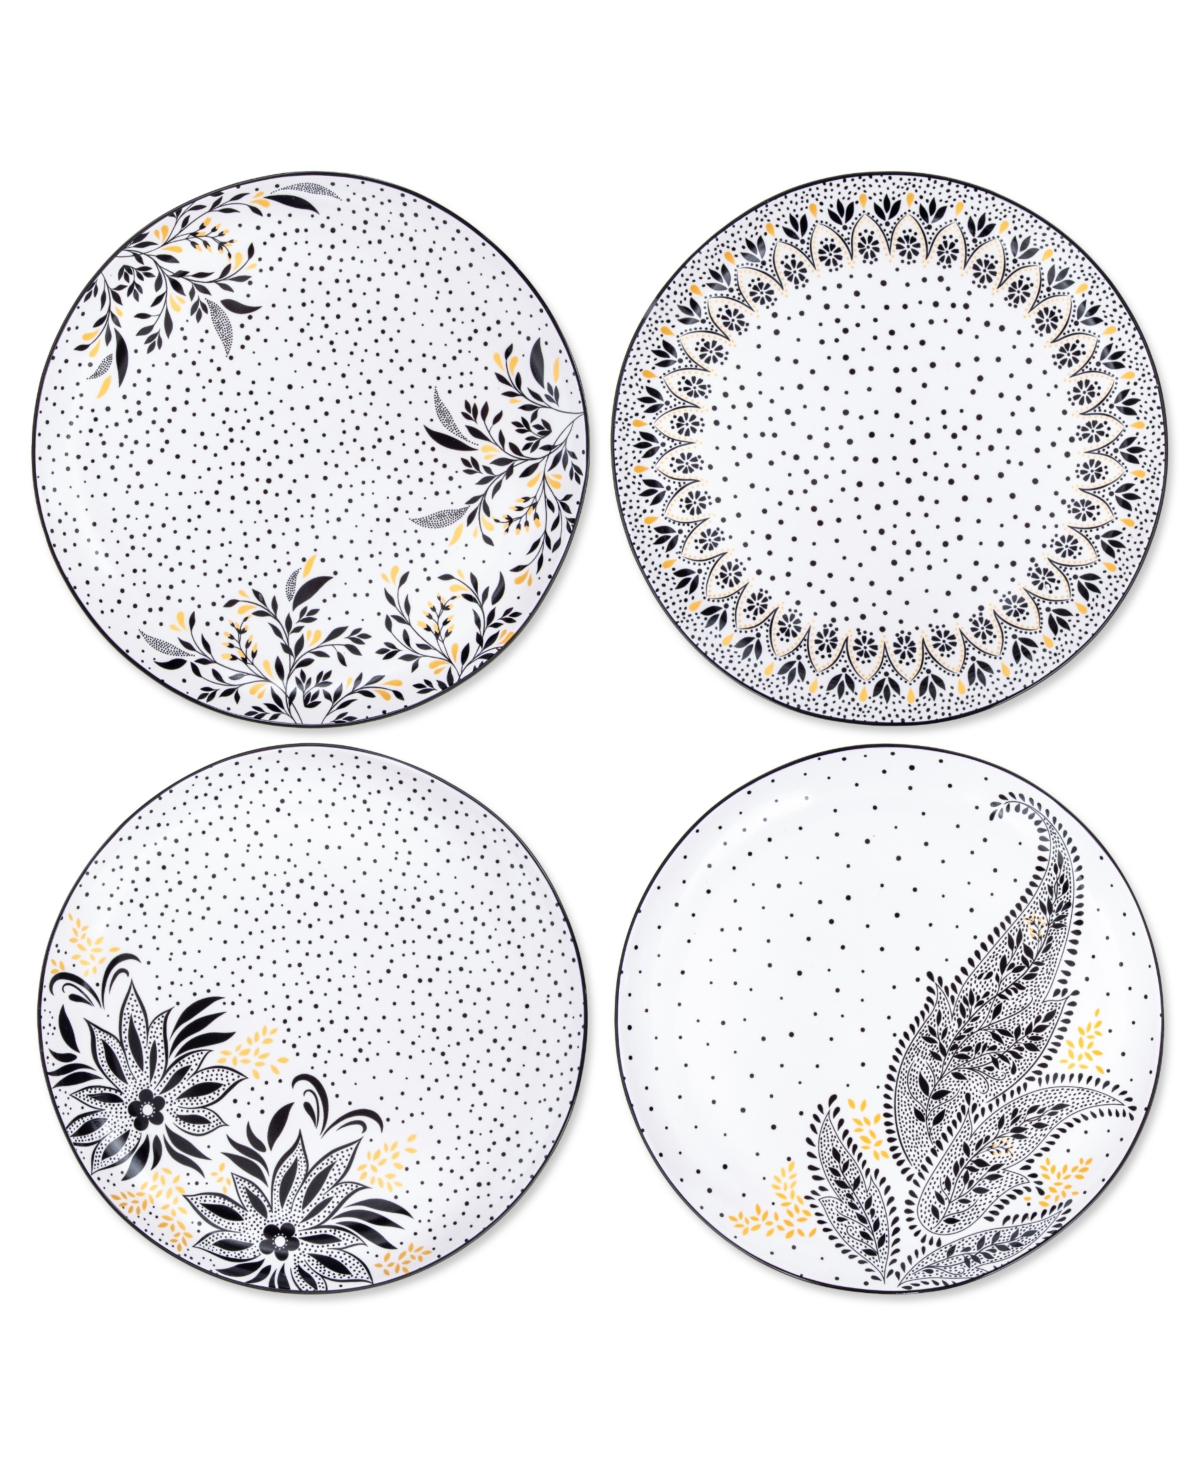 Sara Miller Artisanne Noir Dinner Plates, Set of 4 - White